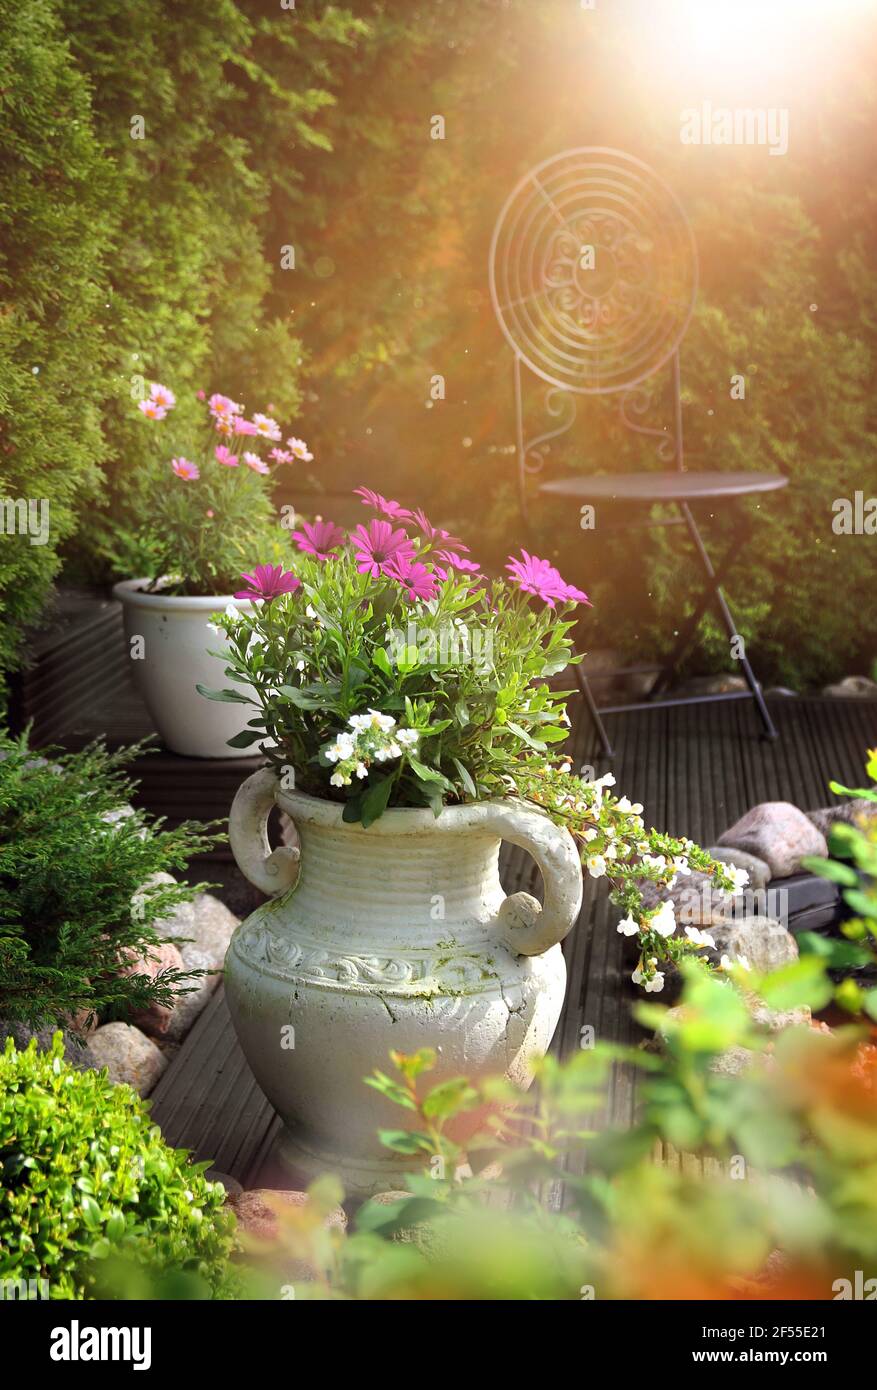 Jardin paisible, ensoleillé et chaleureux, terrasse avec fleurs dans des pots d'argile Banque D'Images